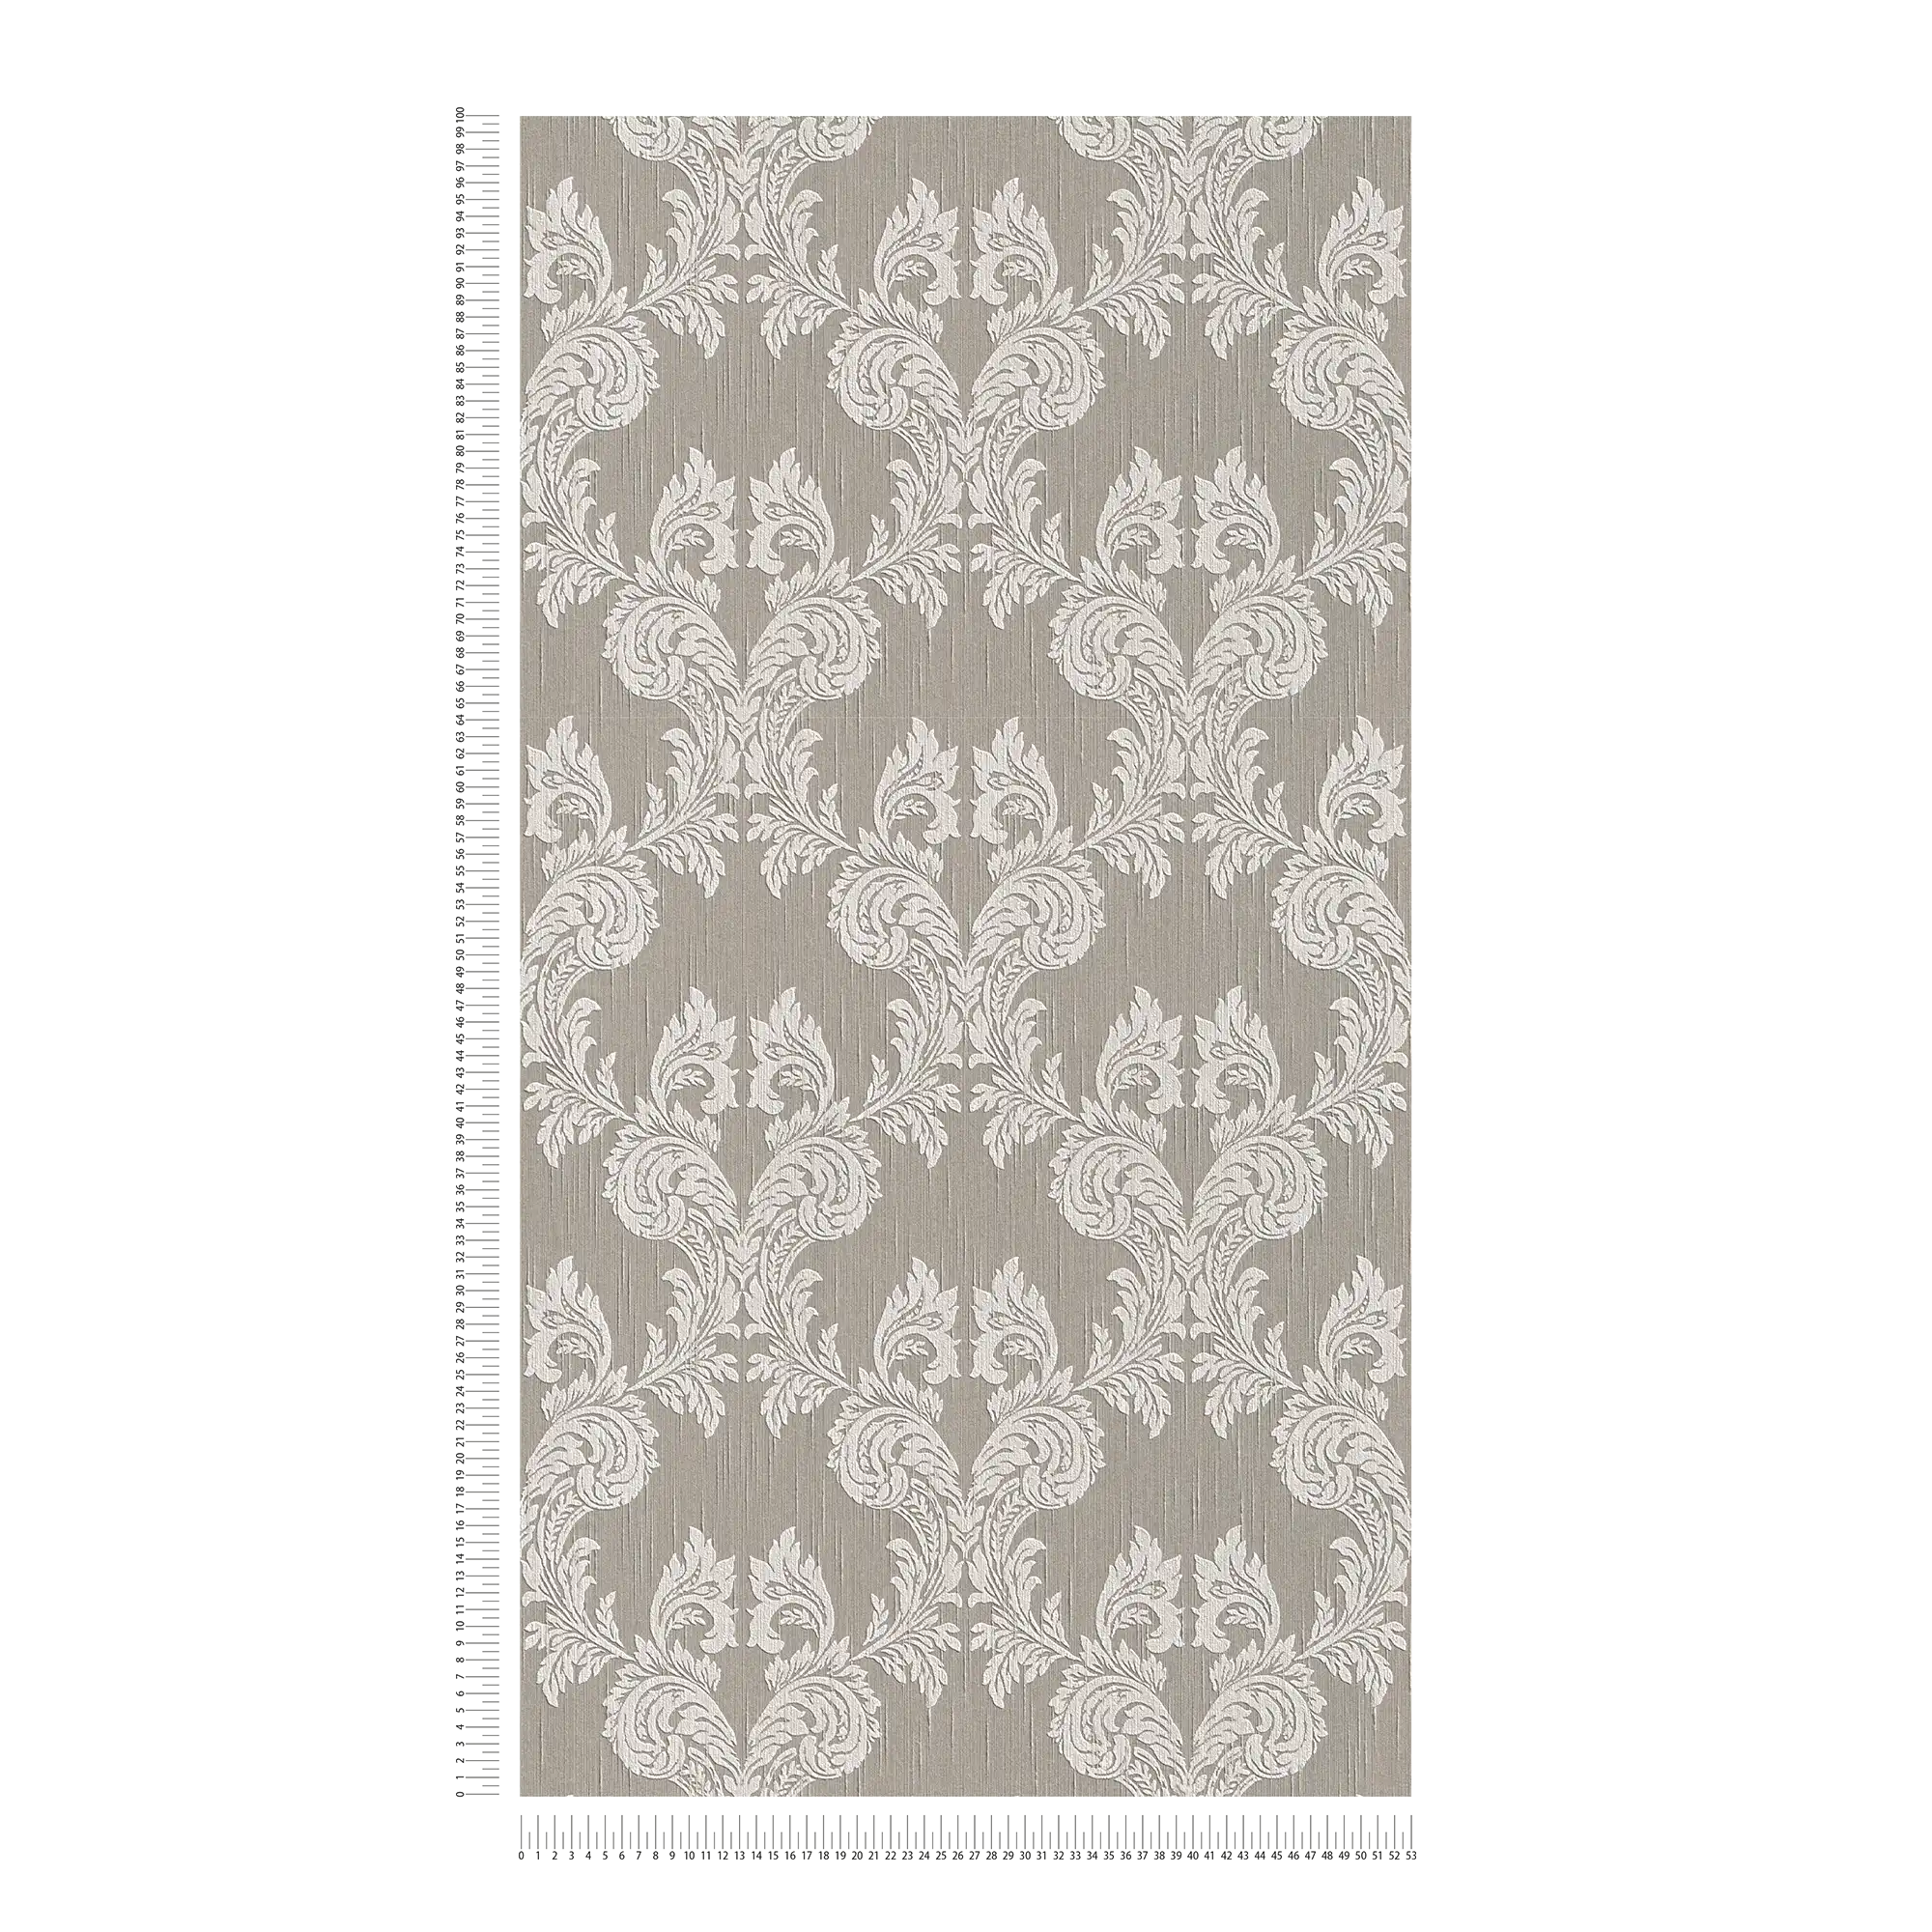             Wallpaper baroque ornaments & textile design - beige, grey
        